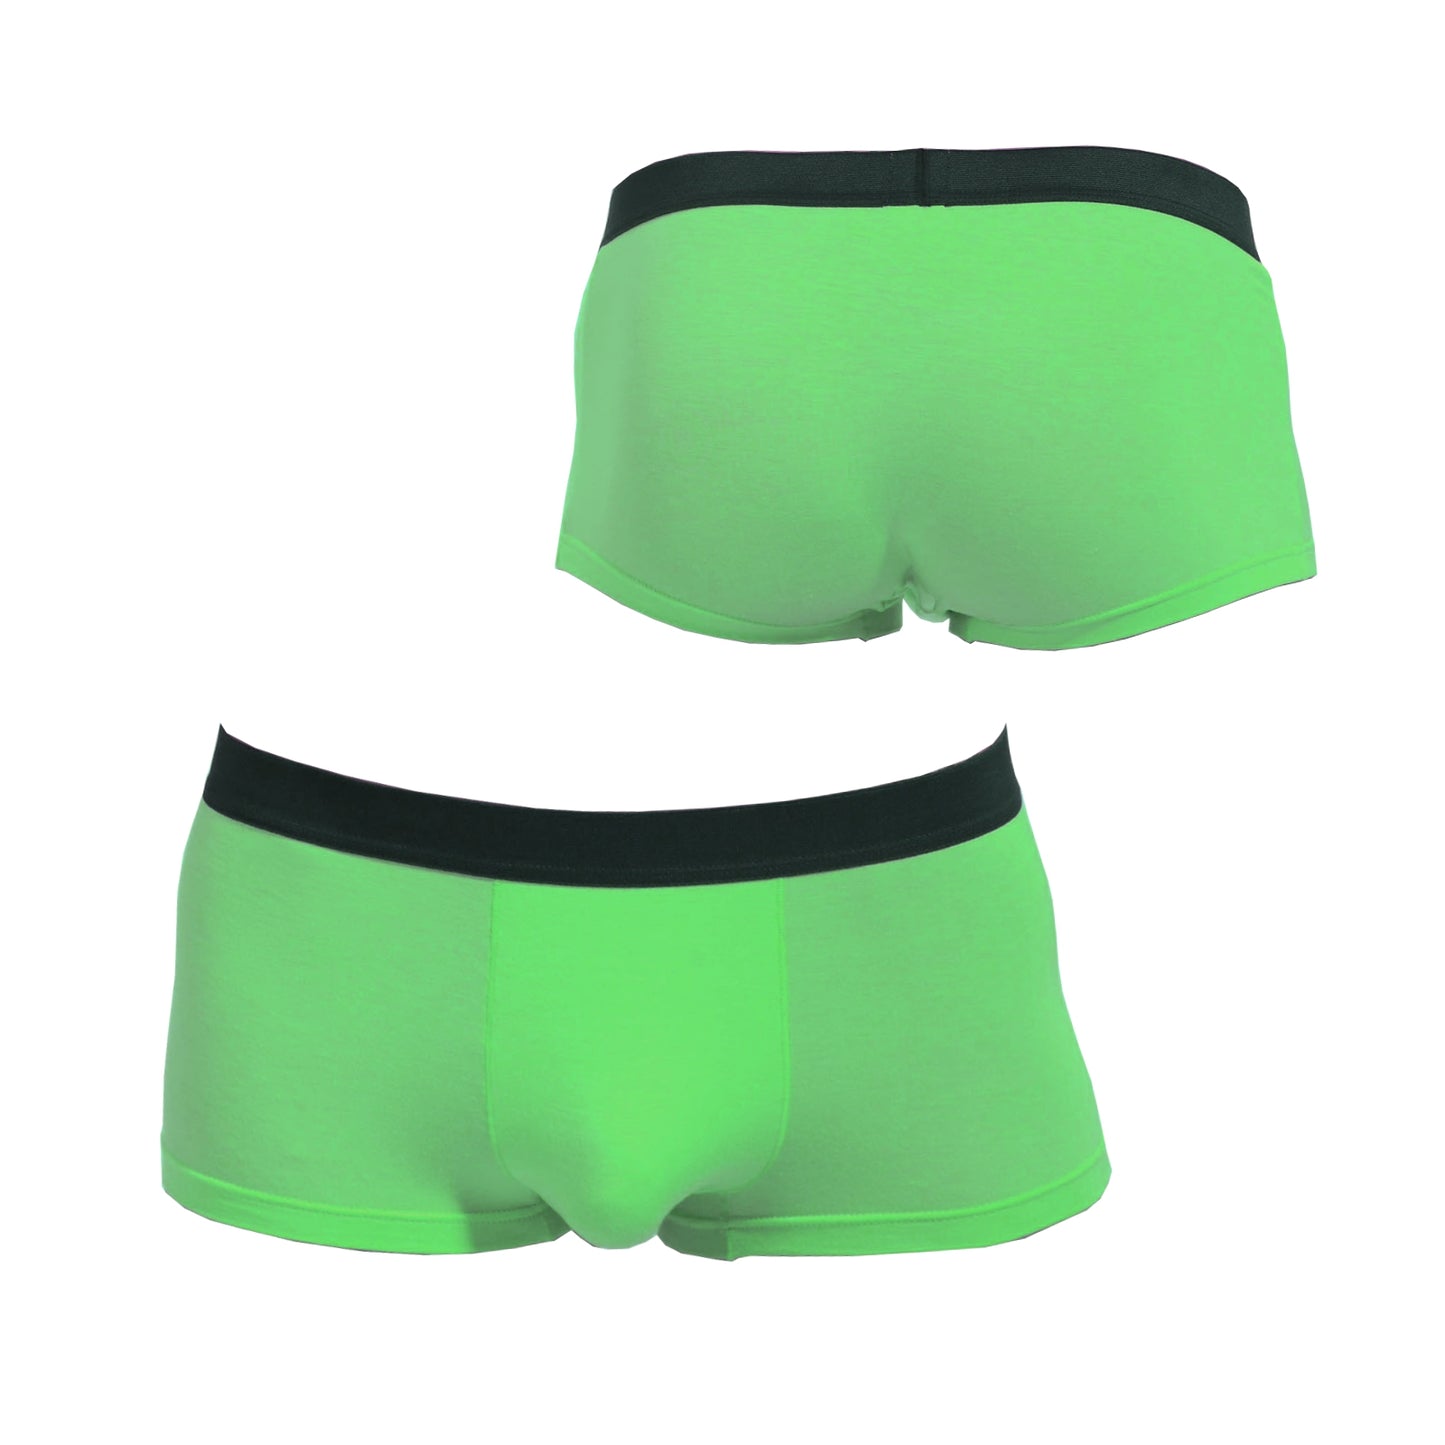 Herren Boxershort Grün Slip Mankini Unifarben Männer Unterhose Panty C-String Wäsche Größe M/L